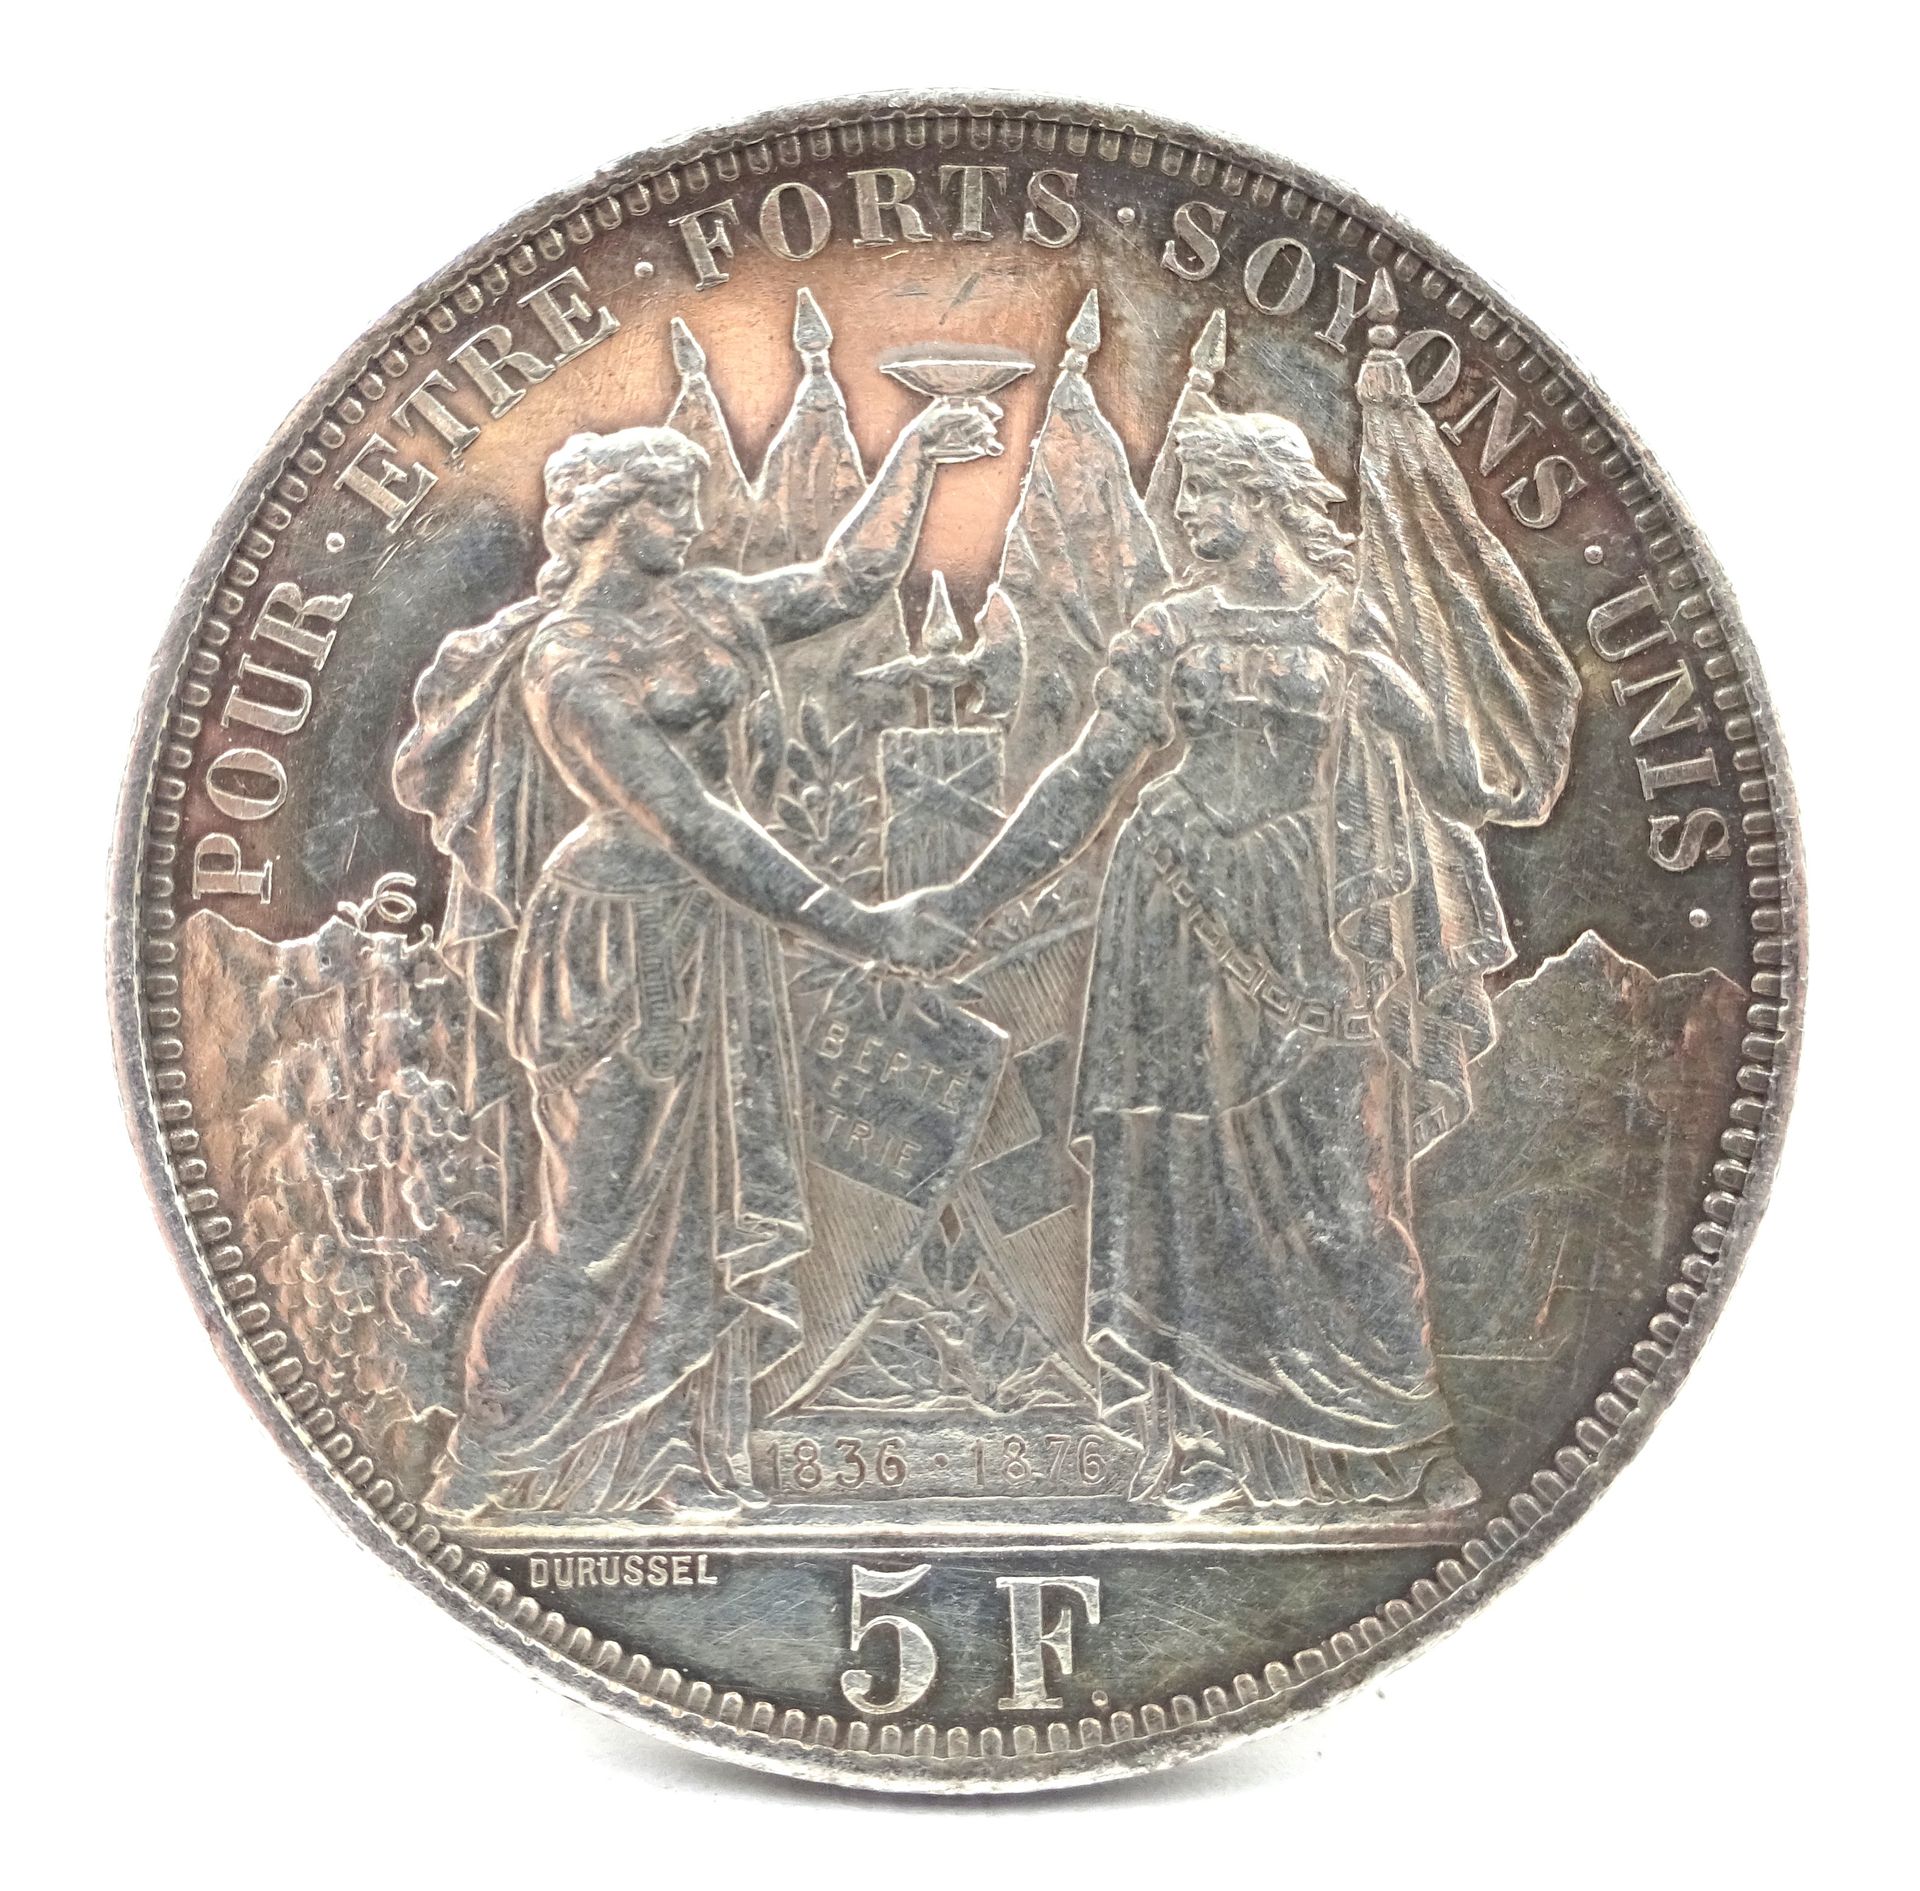 Null Pièce de 5 francs suisses en argent, Lausanne, 1876. 25,00 g net.